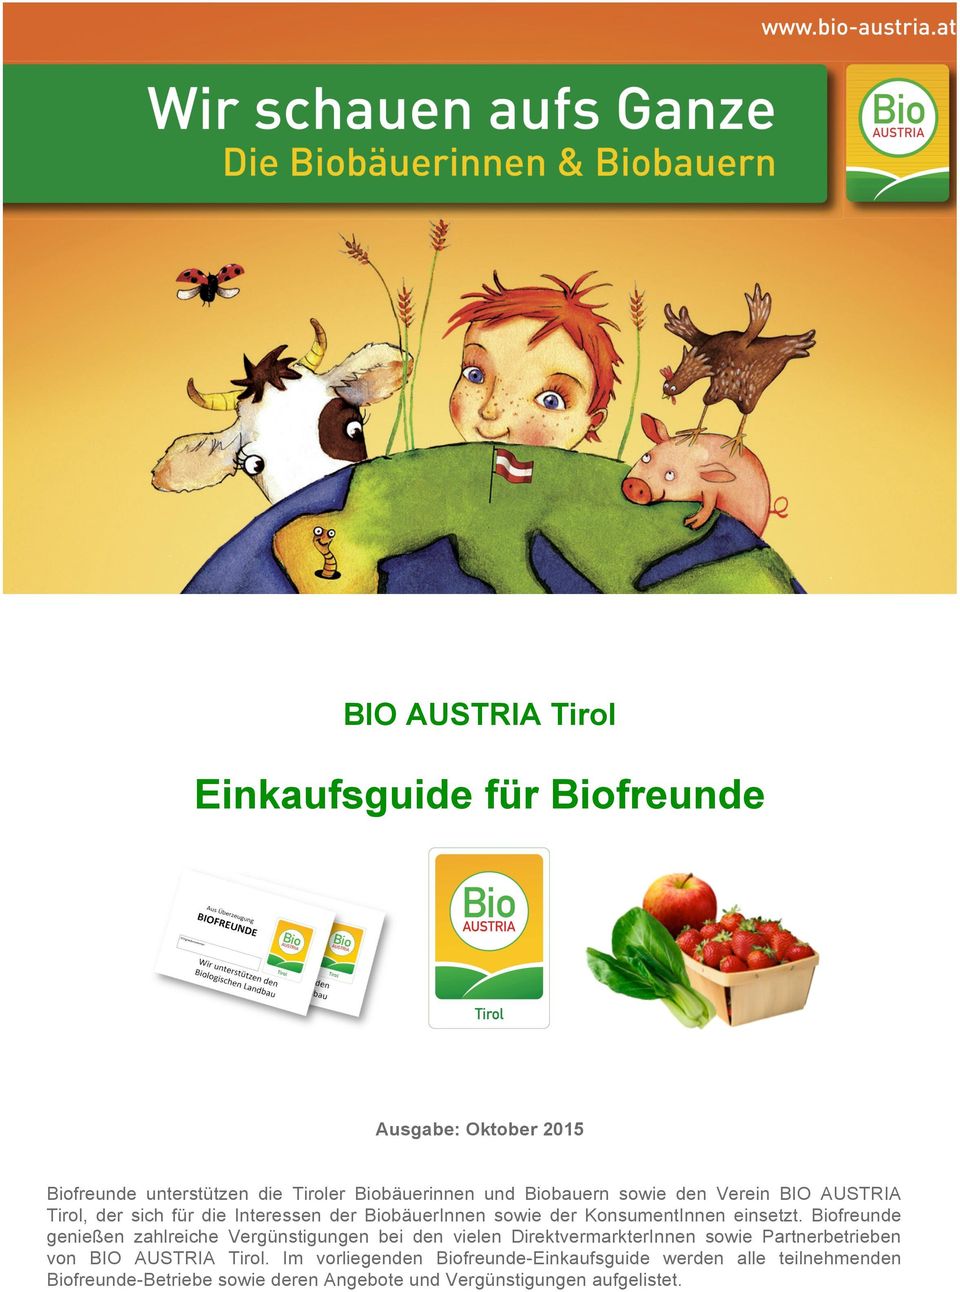 Biofreunde genießen zahlreiche Vergünstigungen bei den vielen DirektvermarkterInnen sowie Partnerbetrieben von BIO AUSTRIA Tirol.